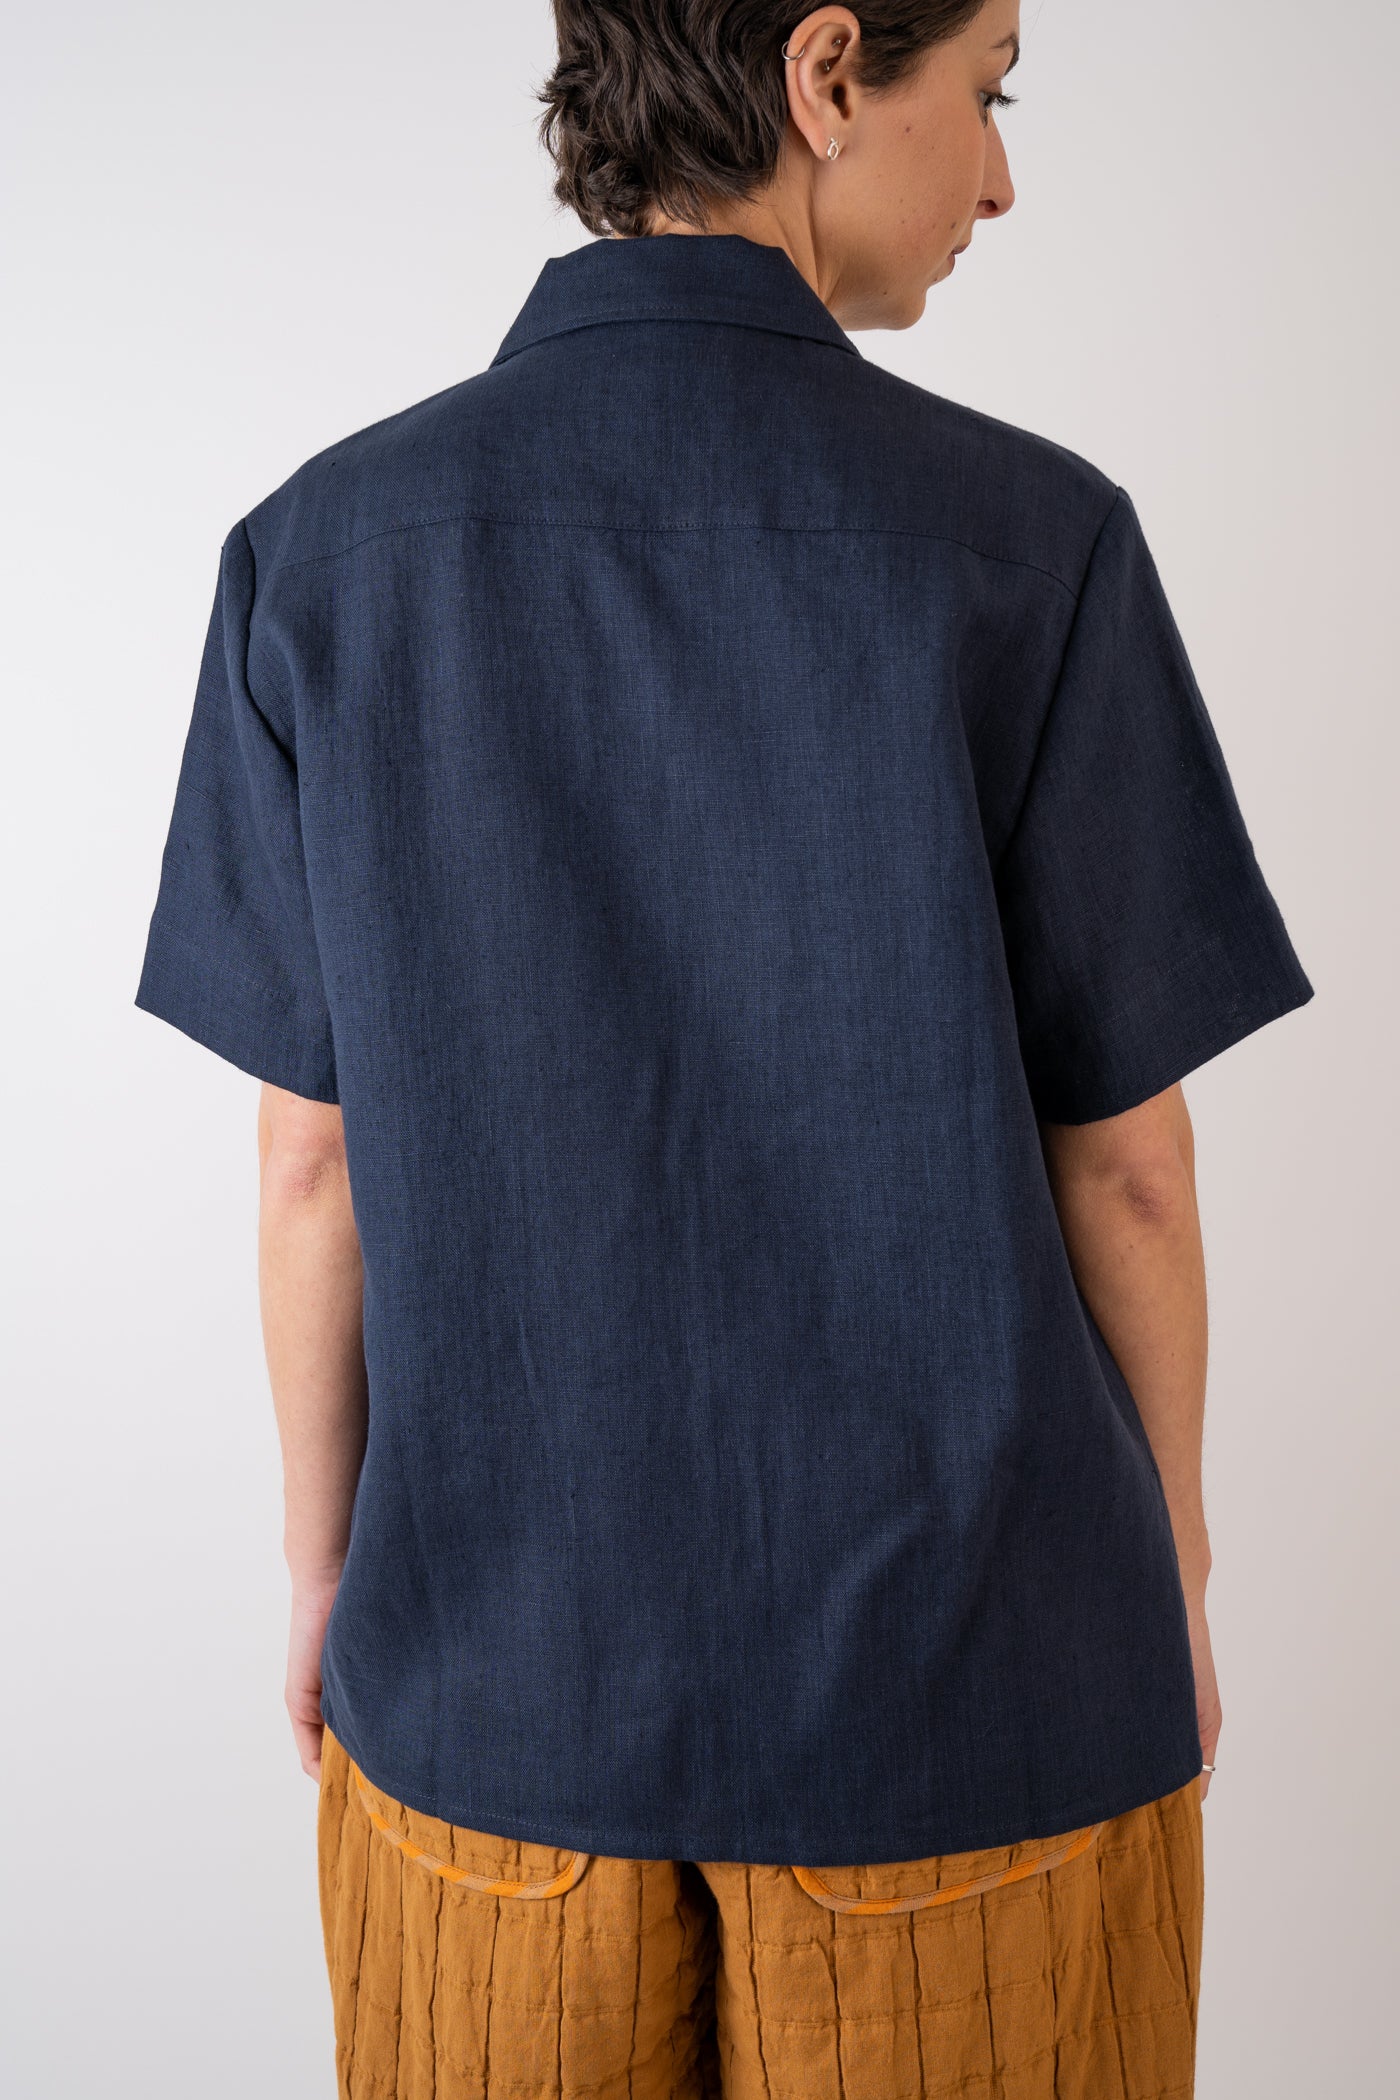 Xi Atelier Linen Cleo Shirt in navy